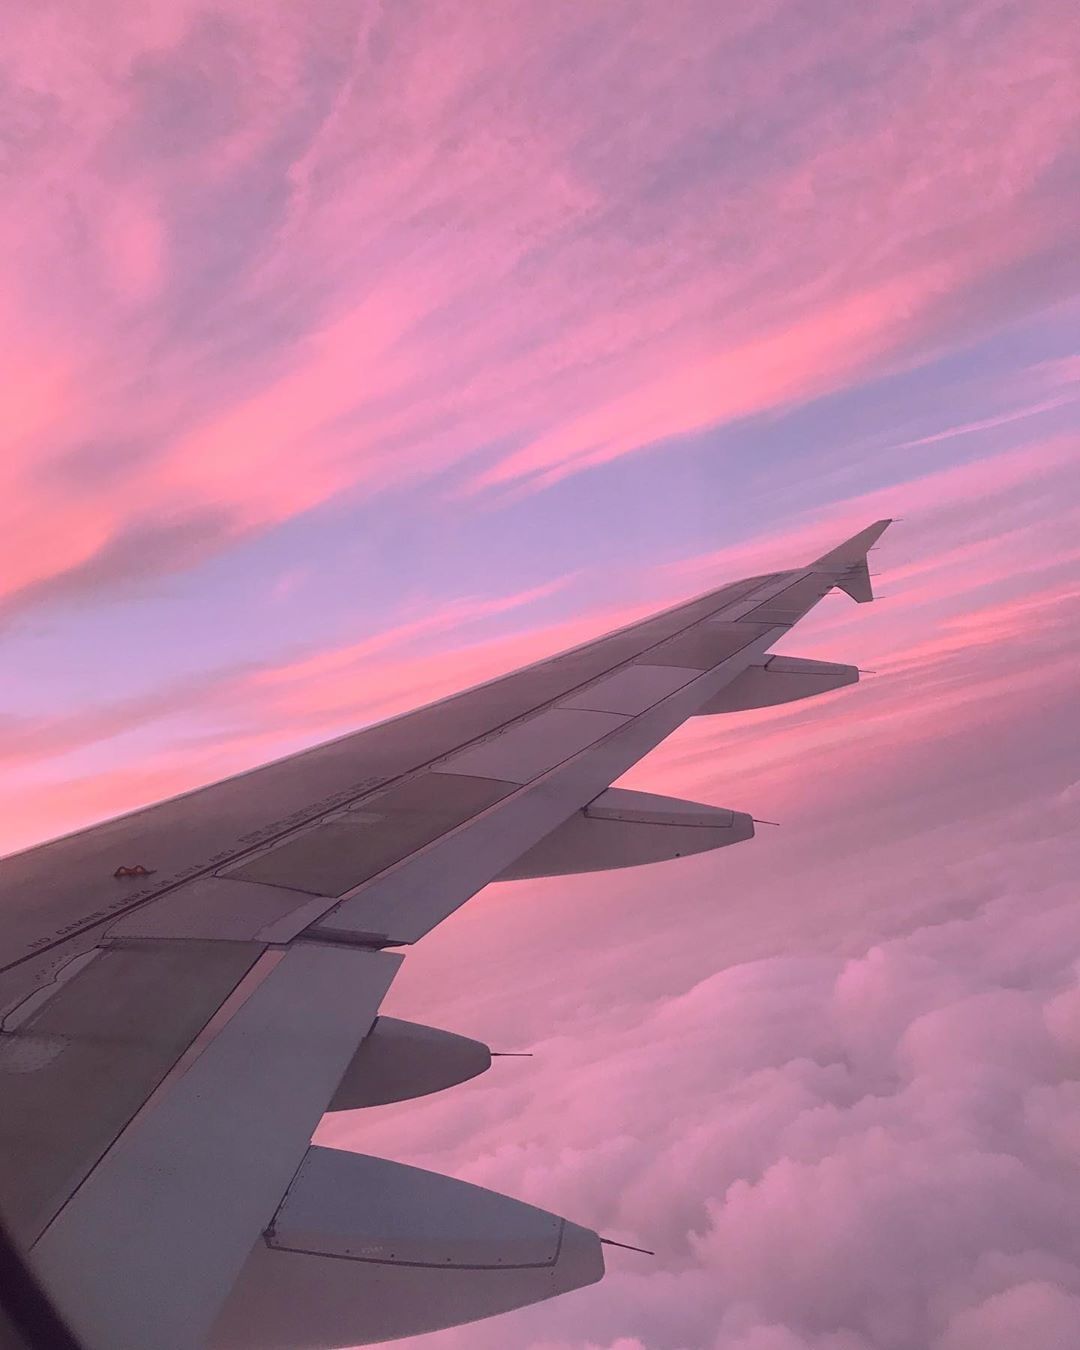  Flugzeug Hintergrundbild 1080x1350. photography inspo / travel pink sunset plane wing. Travel photography, Travel photography europe, Travel photography inspiration